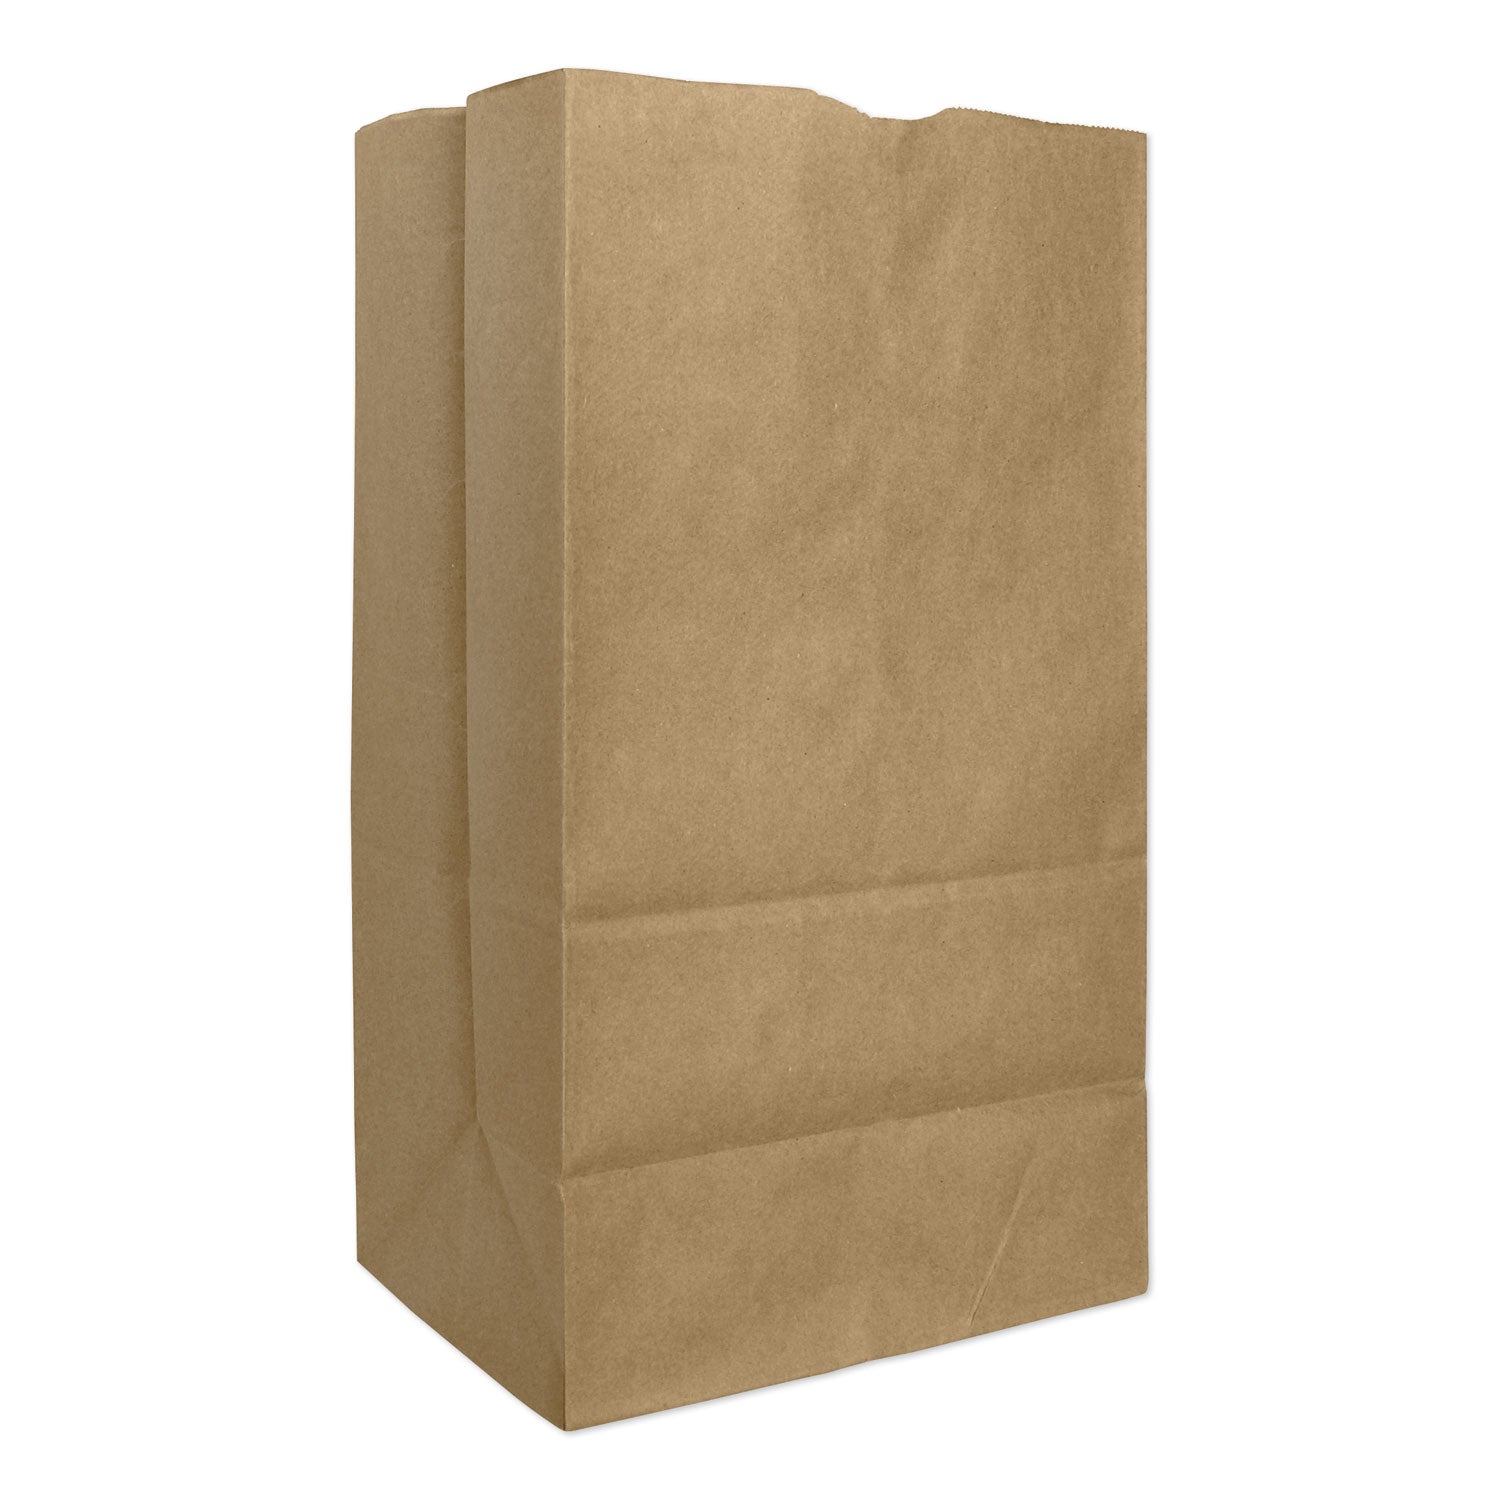 grocery-paper-bags-57-lb-capacity-#25-825-x-613-x-1588-kraft-500-bags_baggx2560s - 1